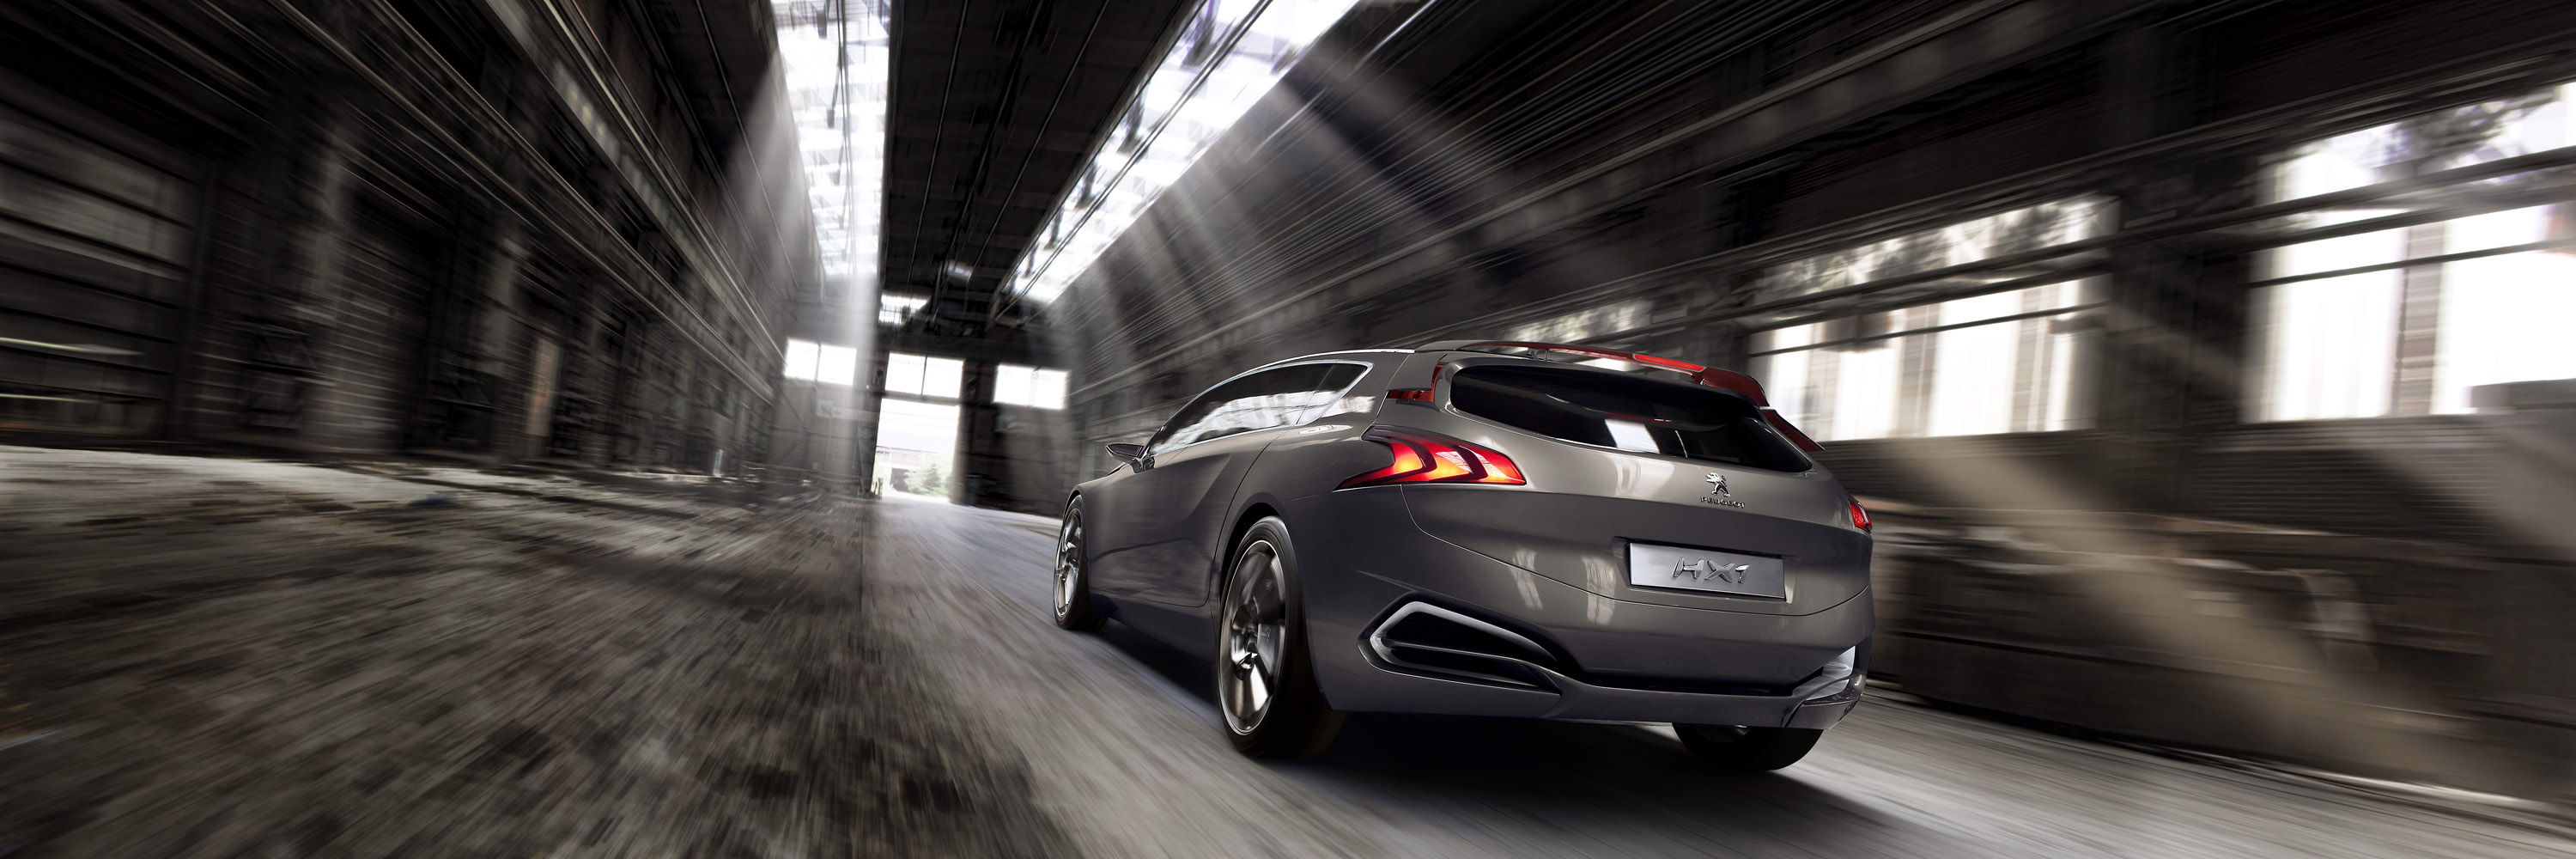 2011, Peugeot, Hx1, Concept, Supercar, Supercars Wallpaper